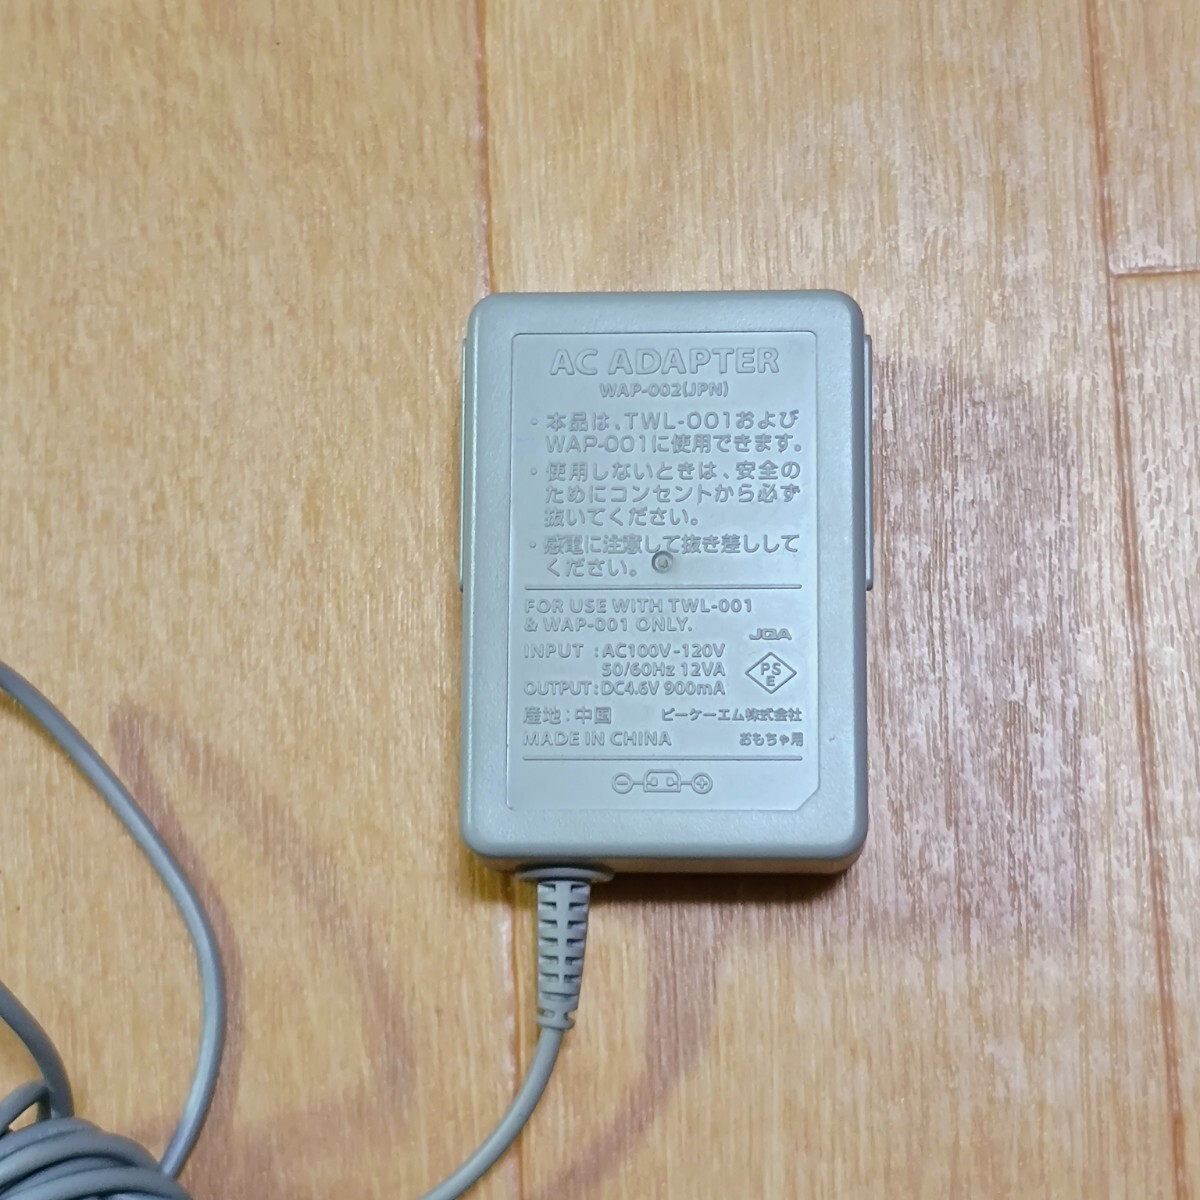 *1 иен старт * работа OK Nintendo DS lite DSi корпус комплект nintendo с зарядным устройством .